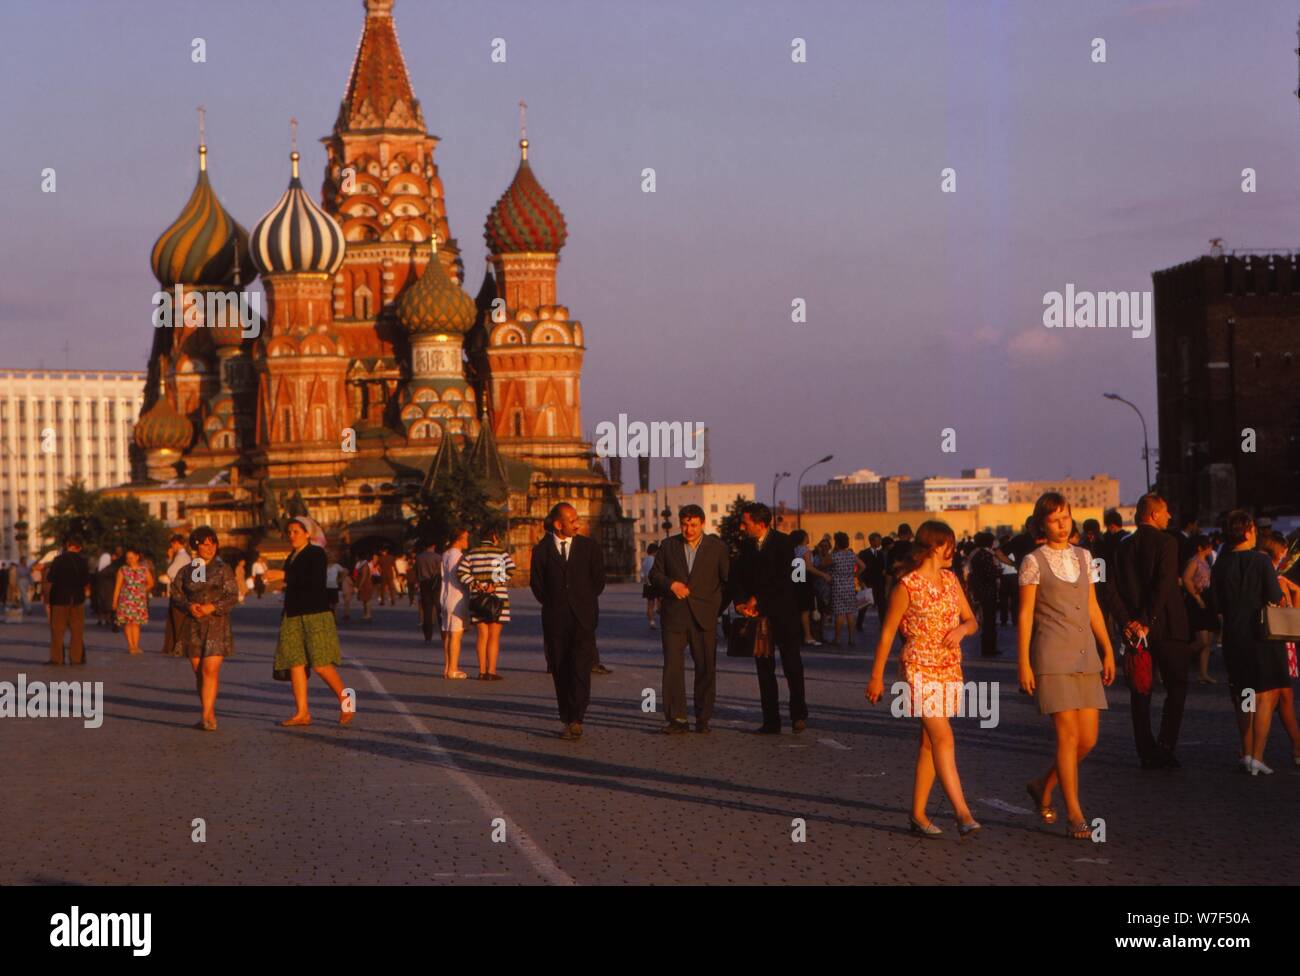 St. Basils im Abendlicht, Roter Platz, Moskau, c1970s. Künstler: CM Dixon. Stockfoto